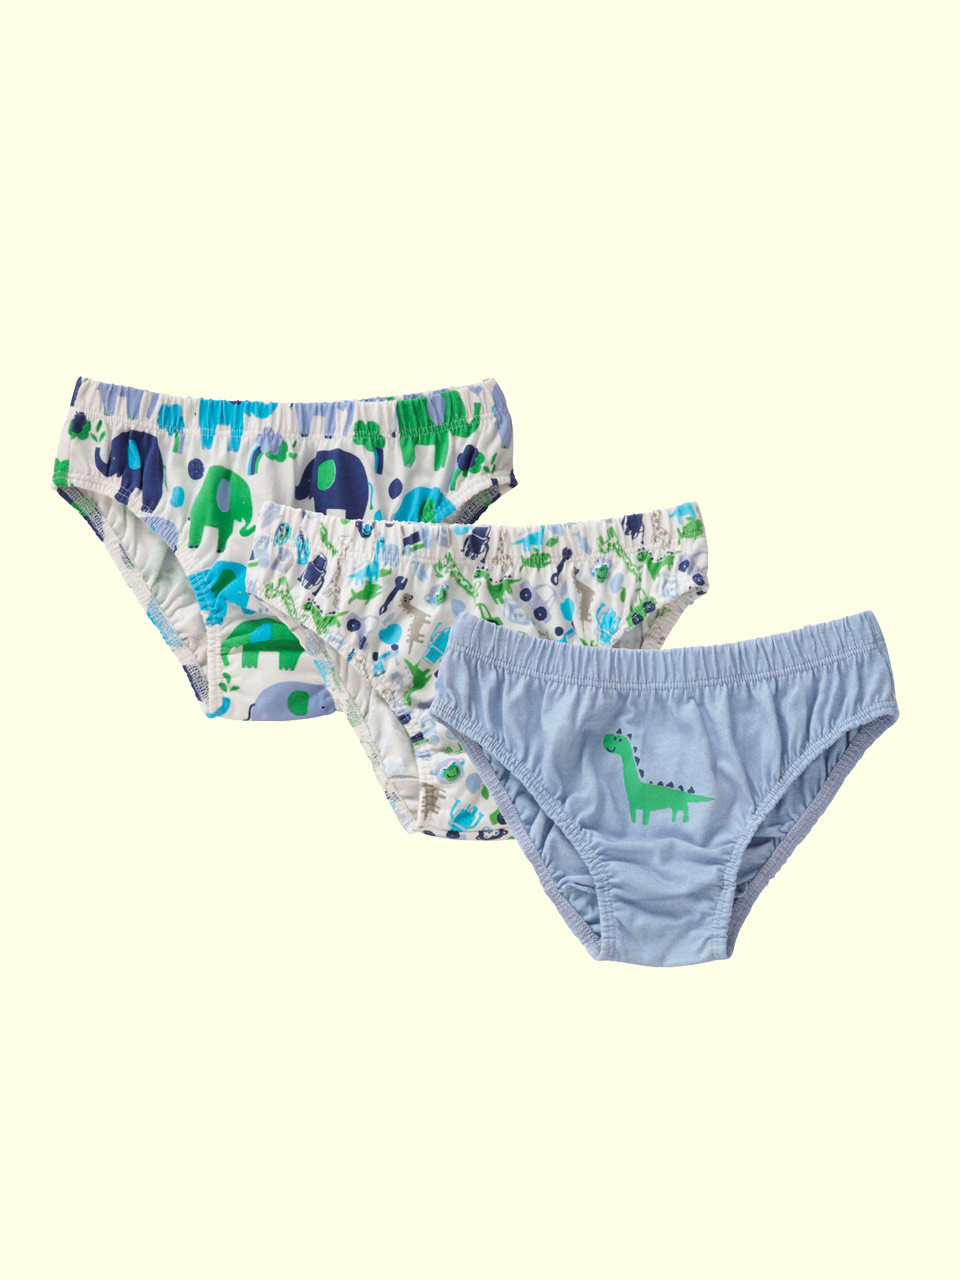 Boys Underwear,Toddler Briefs Shorts 3 Pack Cotton Dinosaur Boys